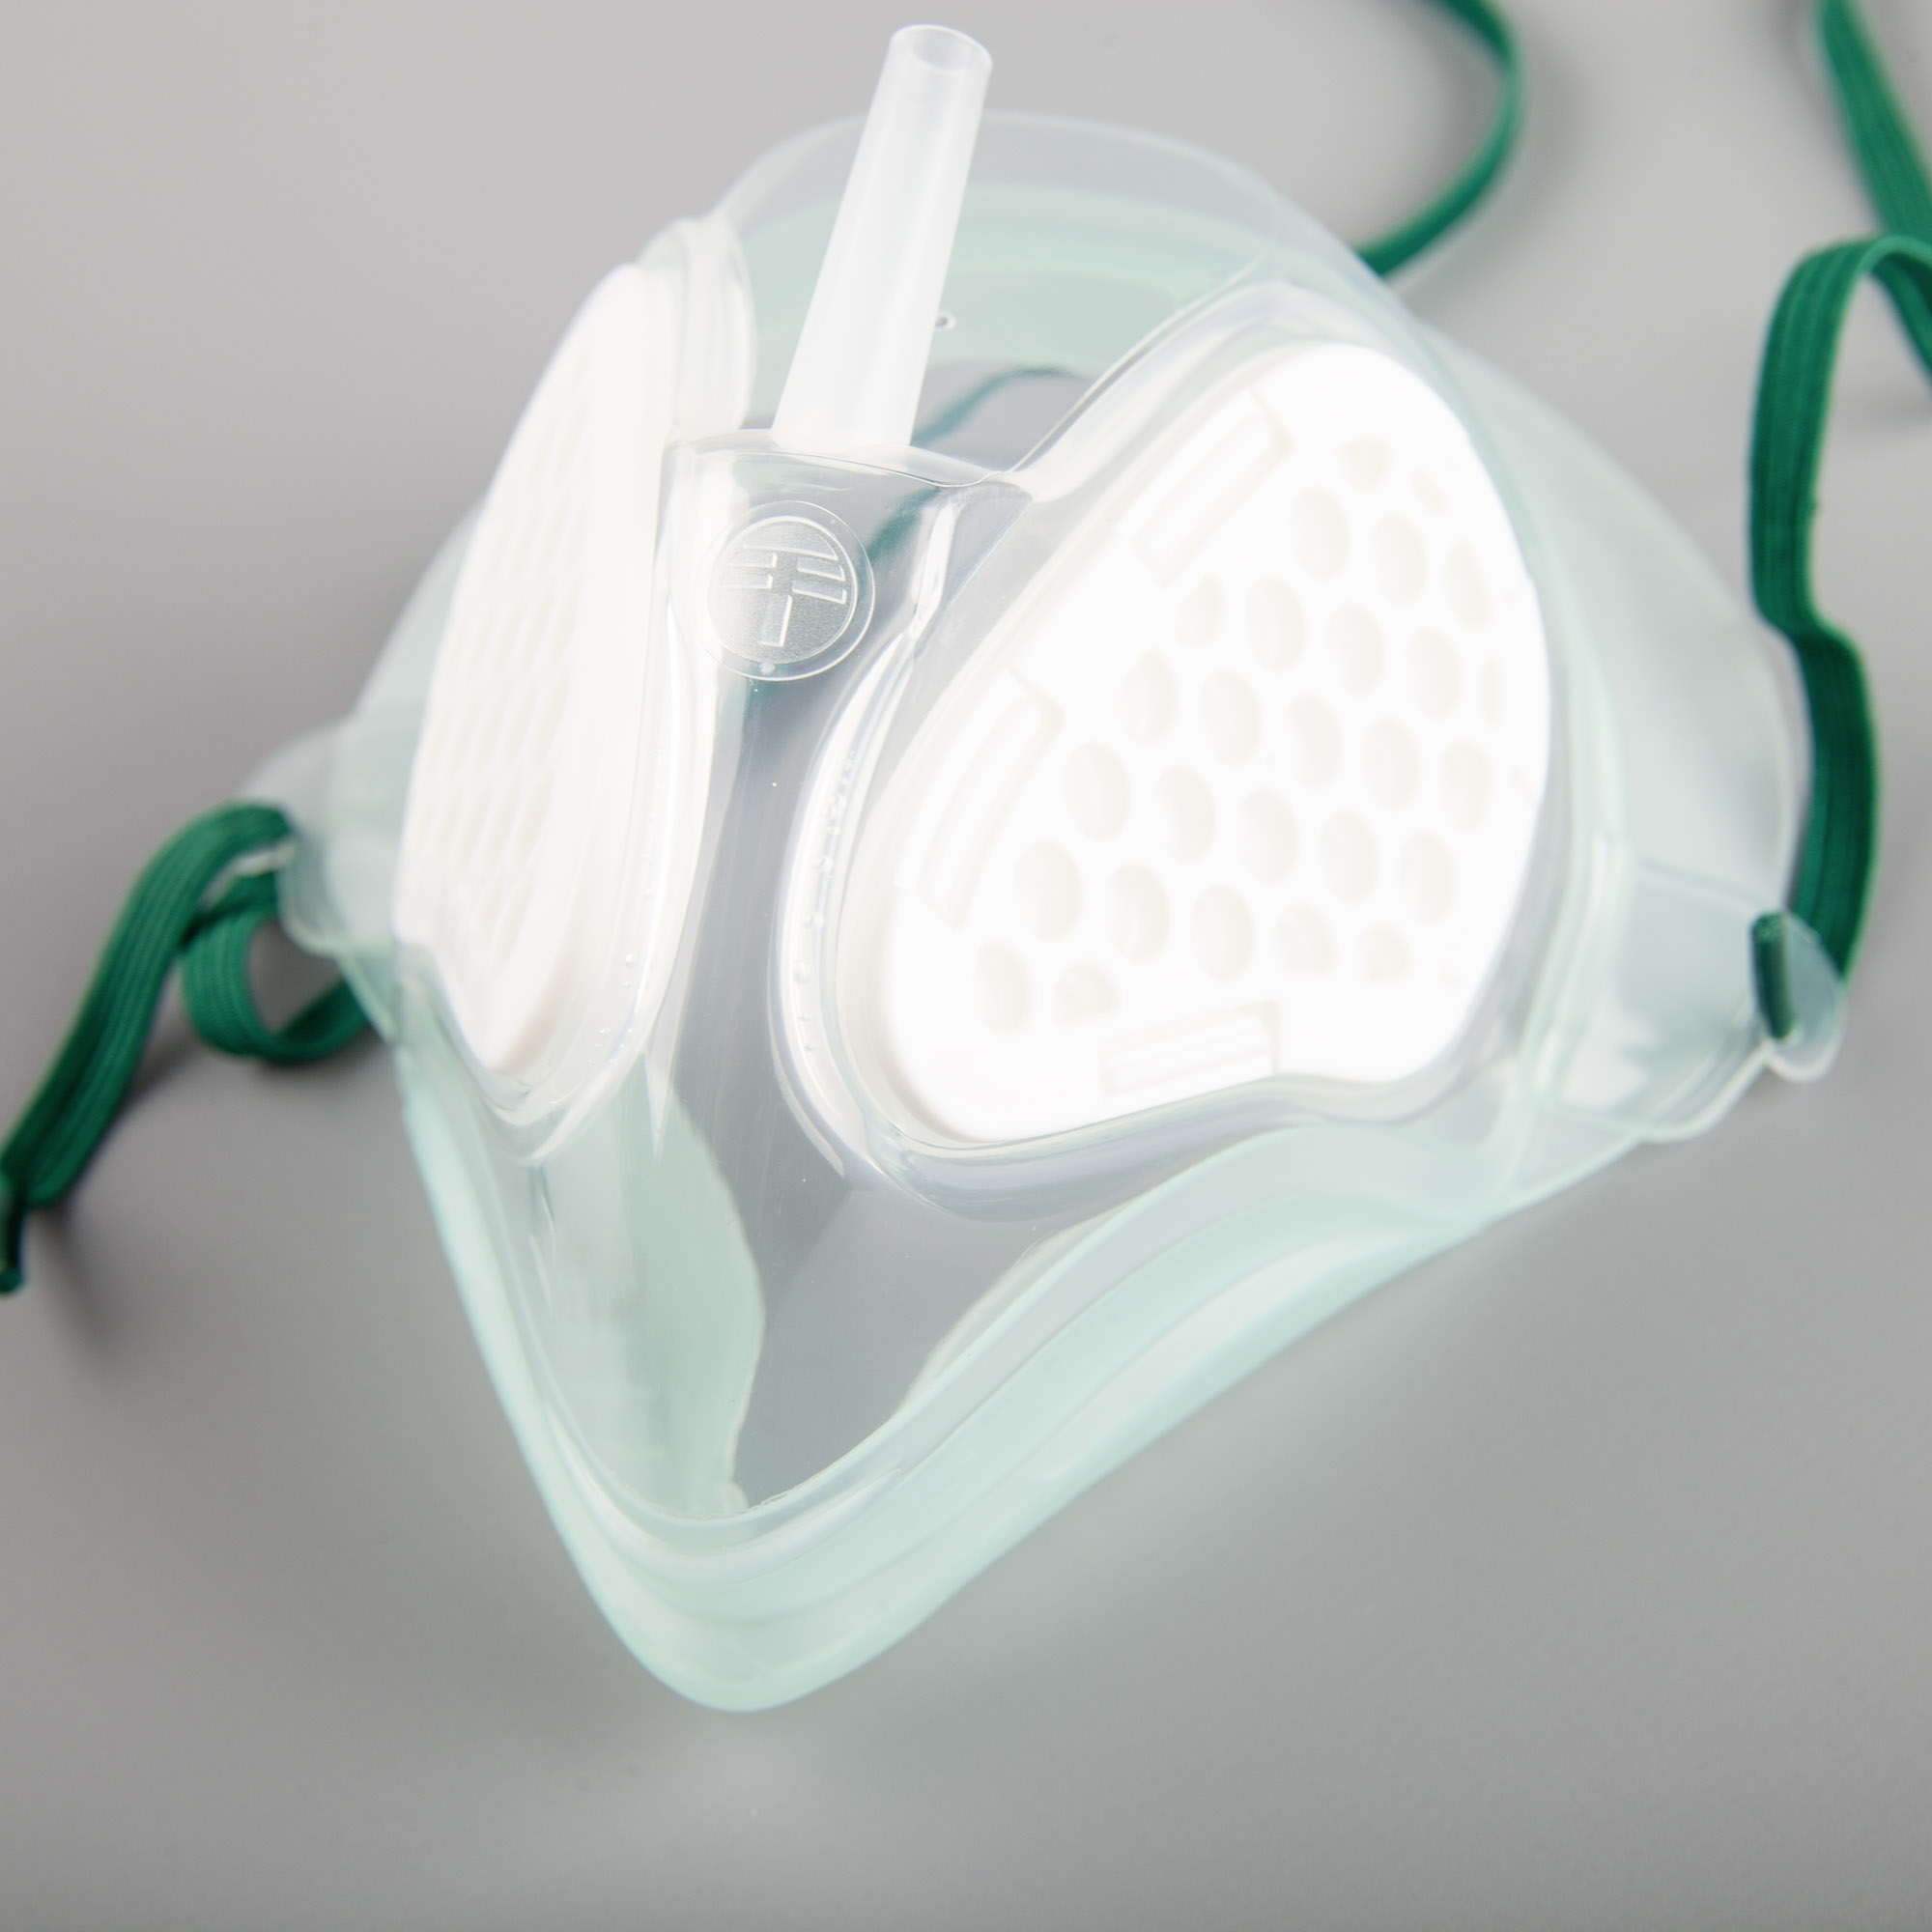 Sauerstoff-Maske mit integriertem Filtermedium